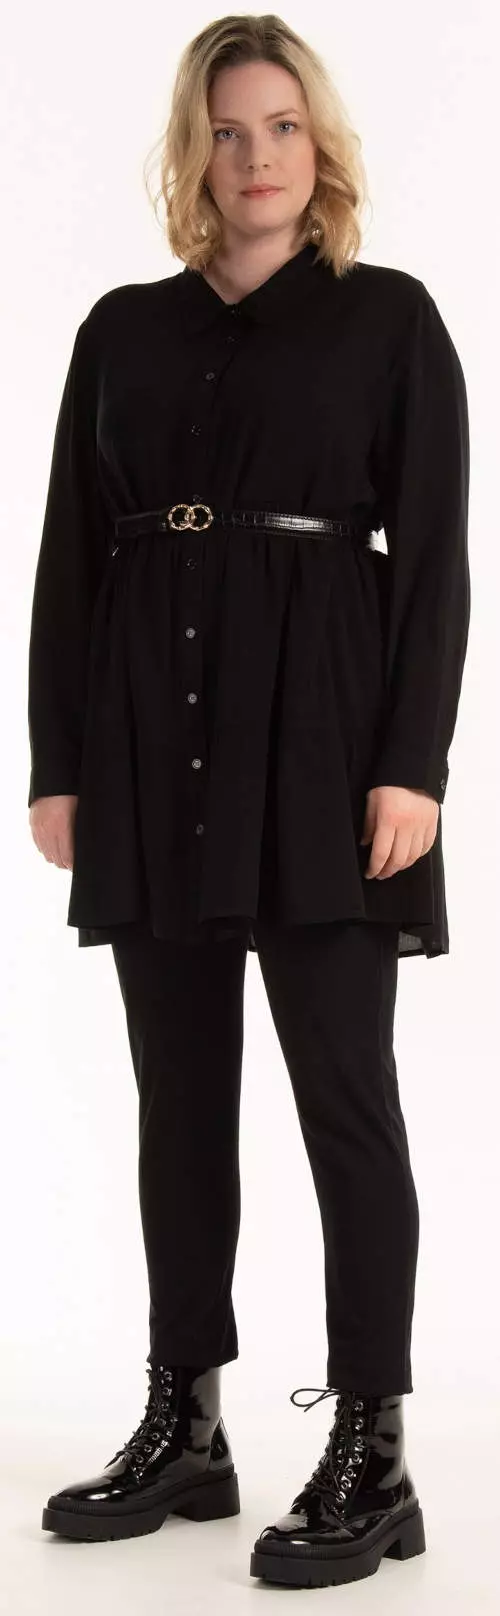 Fekete plus size női ing tunika